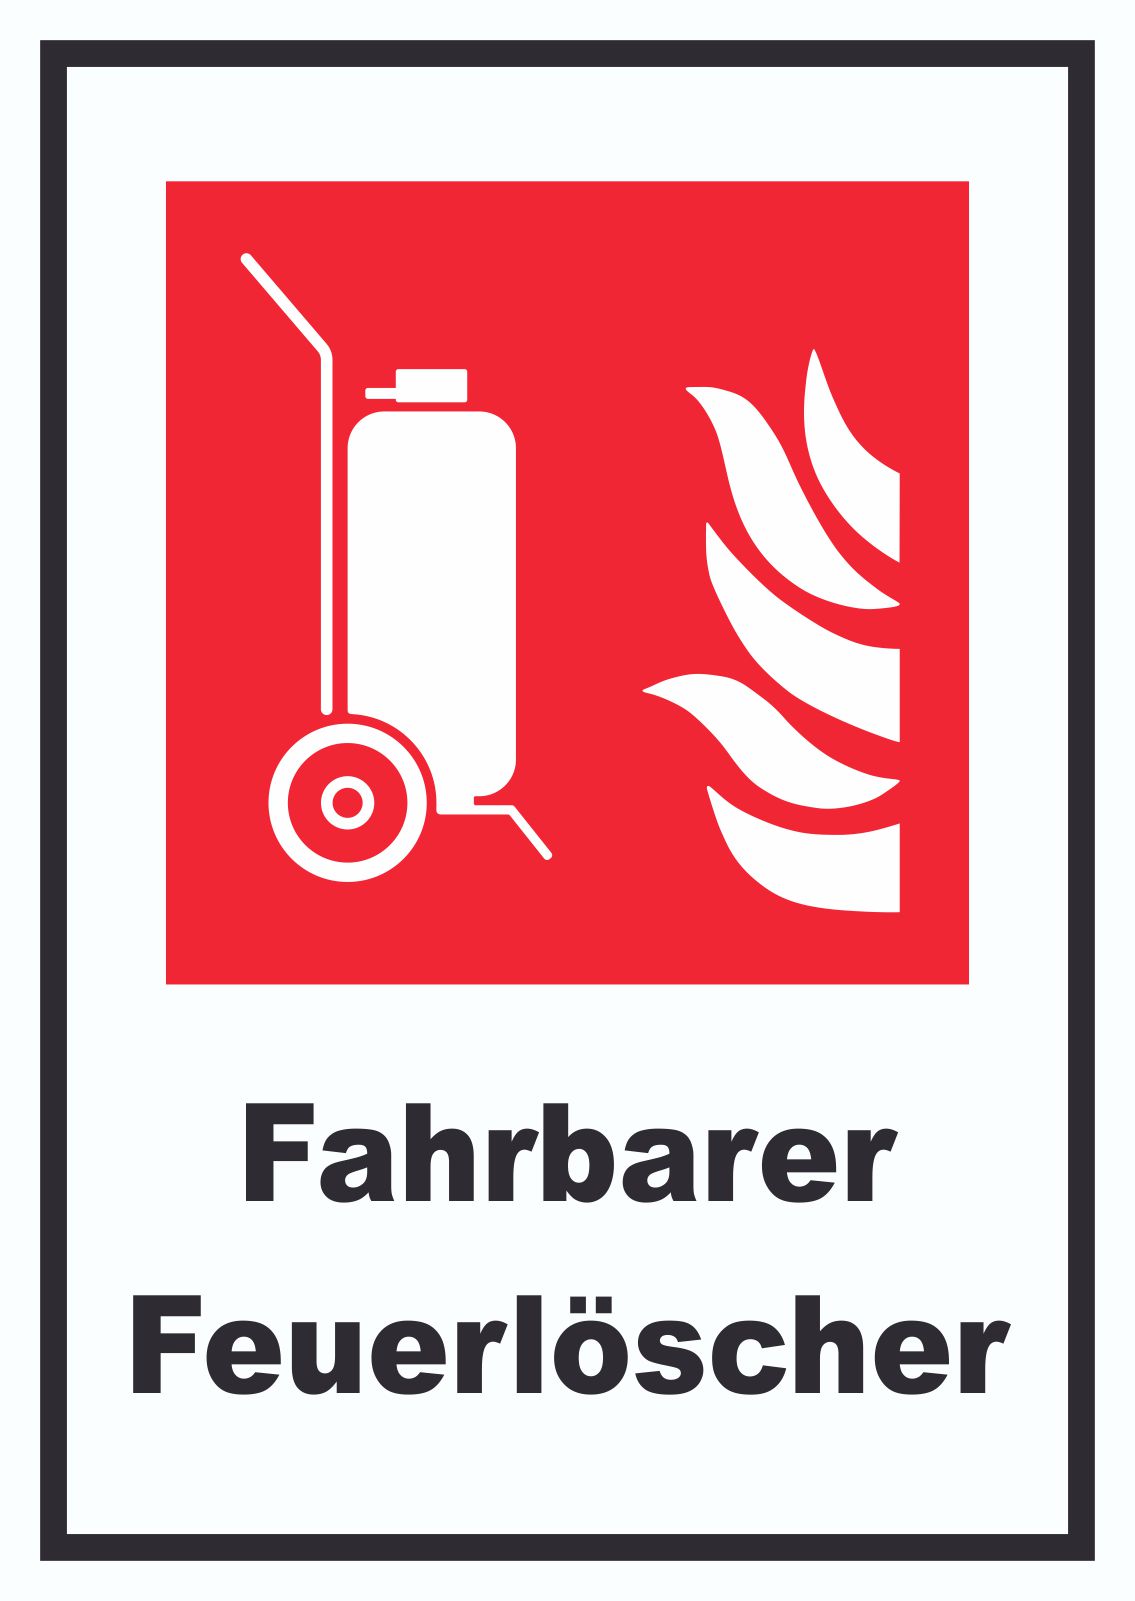 Fahrbarer Feuerlöscher Schild  HB-Druck Schilder, Textildruck & Stickerei  Onlineshop